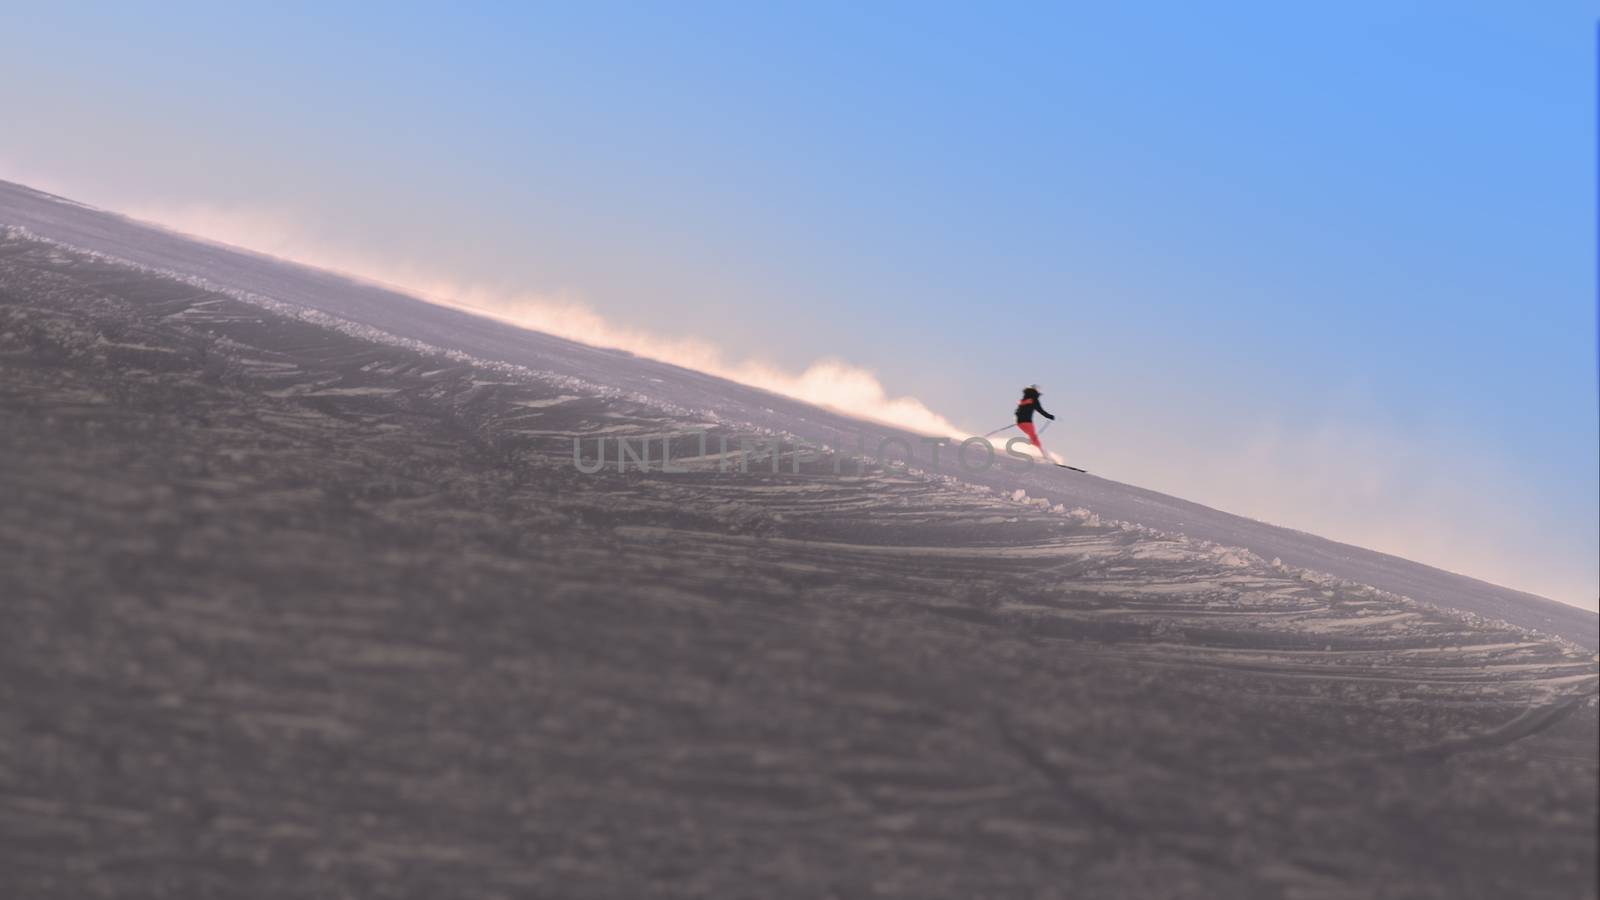 Skier enjoying the slopes in the morning at the Austrian Alps near Innsbruck